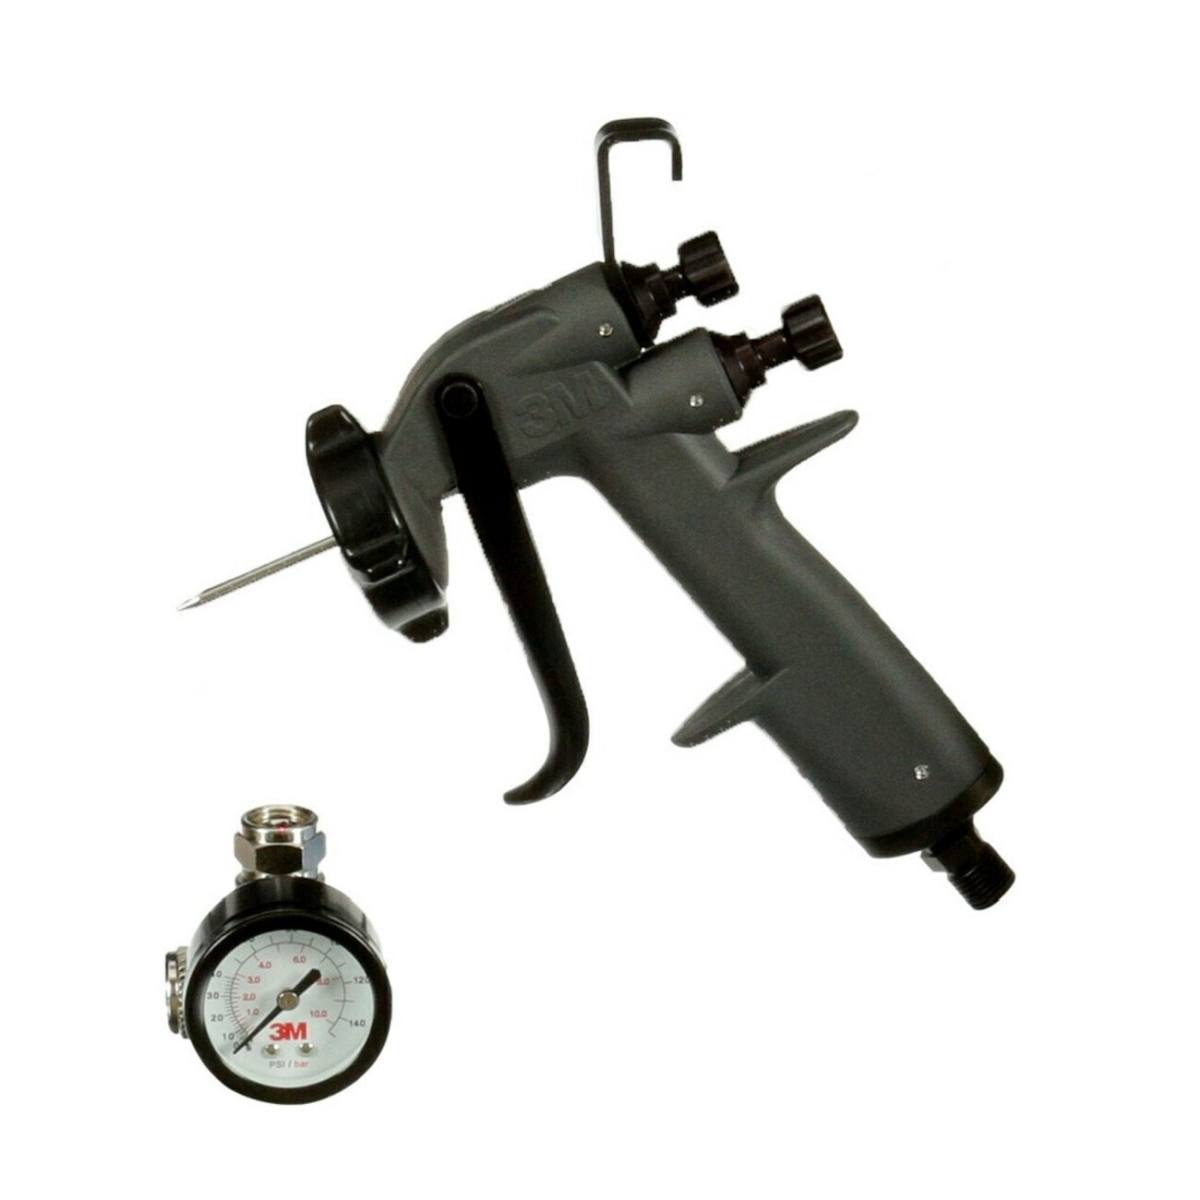 Pistola pulverizadora de alto rendimiento 3M, pistola pulverizadora y válvula para el control del caudal de aire